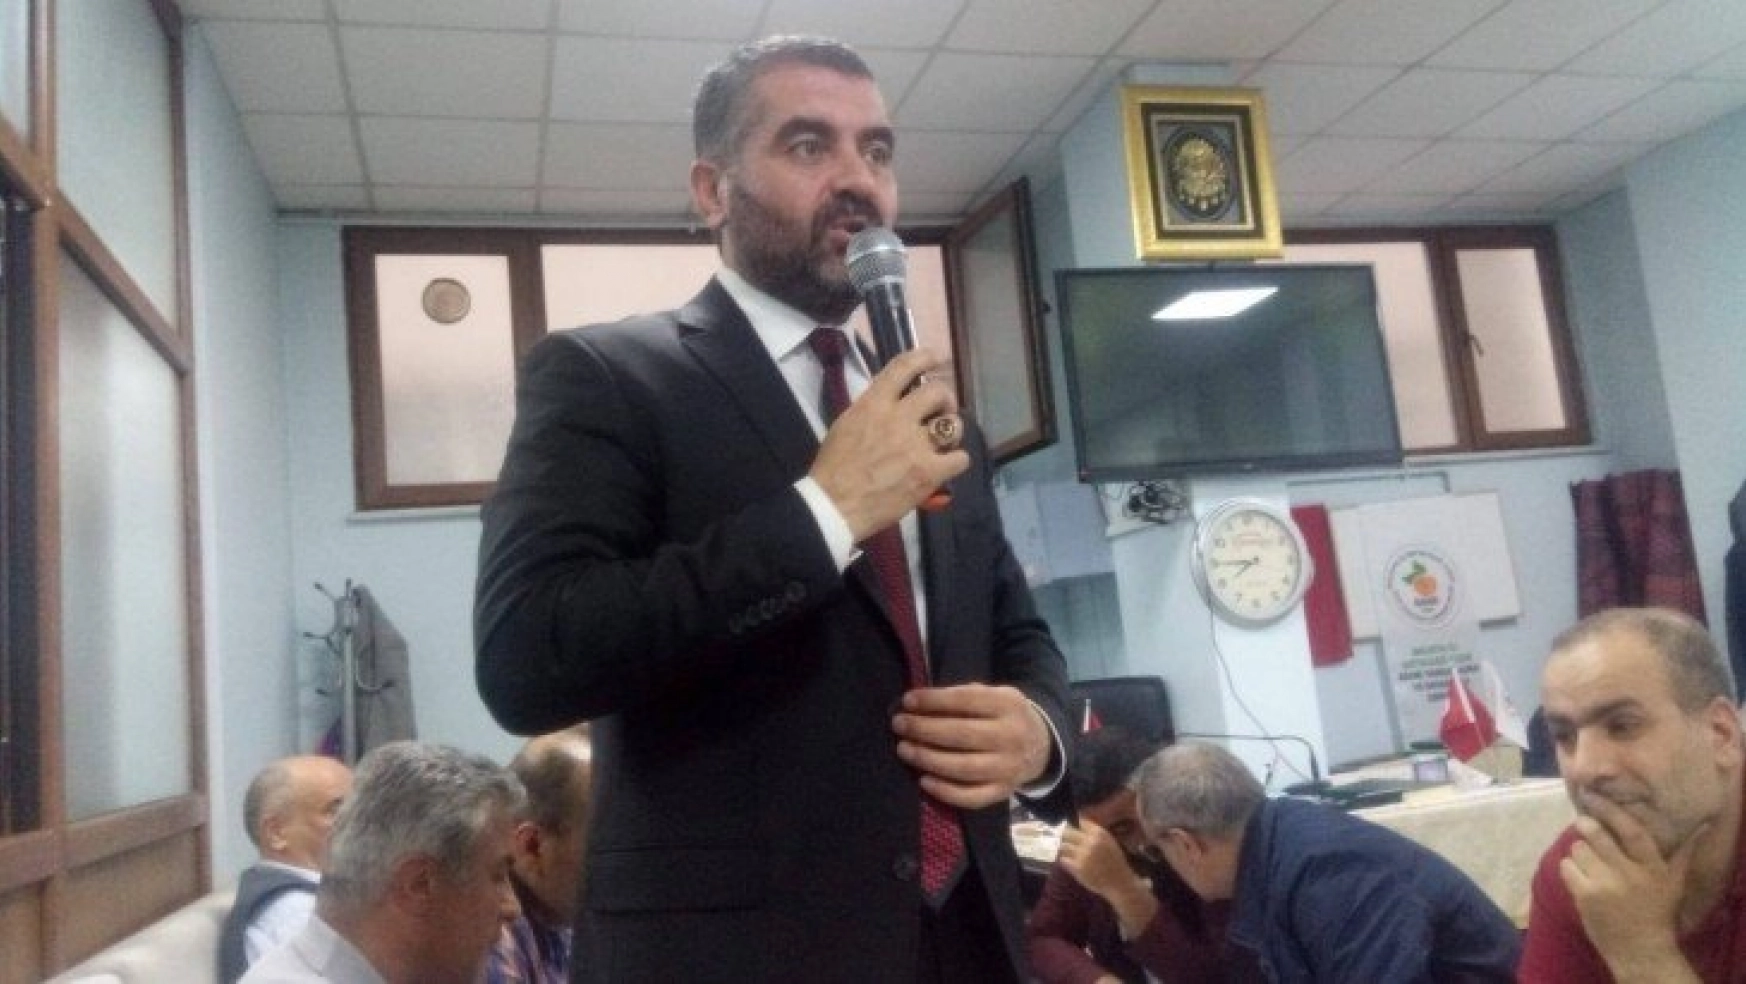 Avşar, İstanbul'da seçim çalışmalarını sürdürüyor